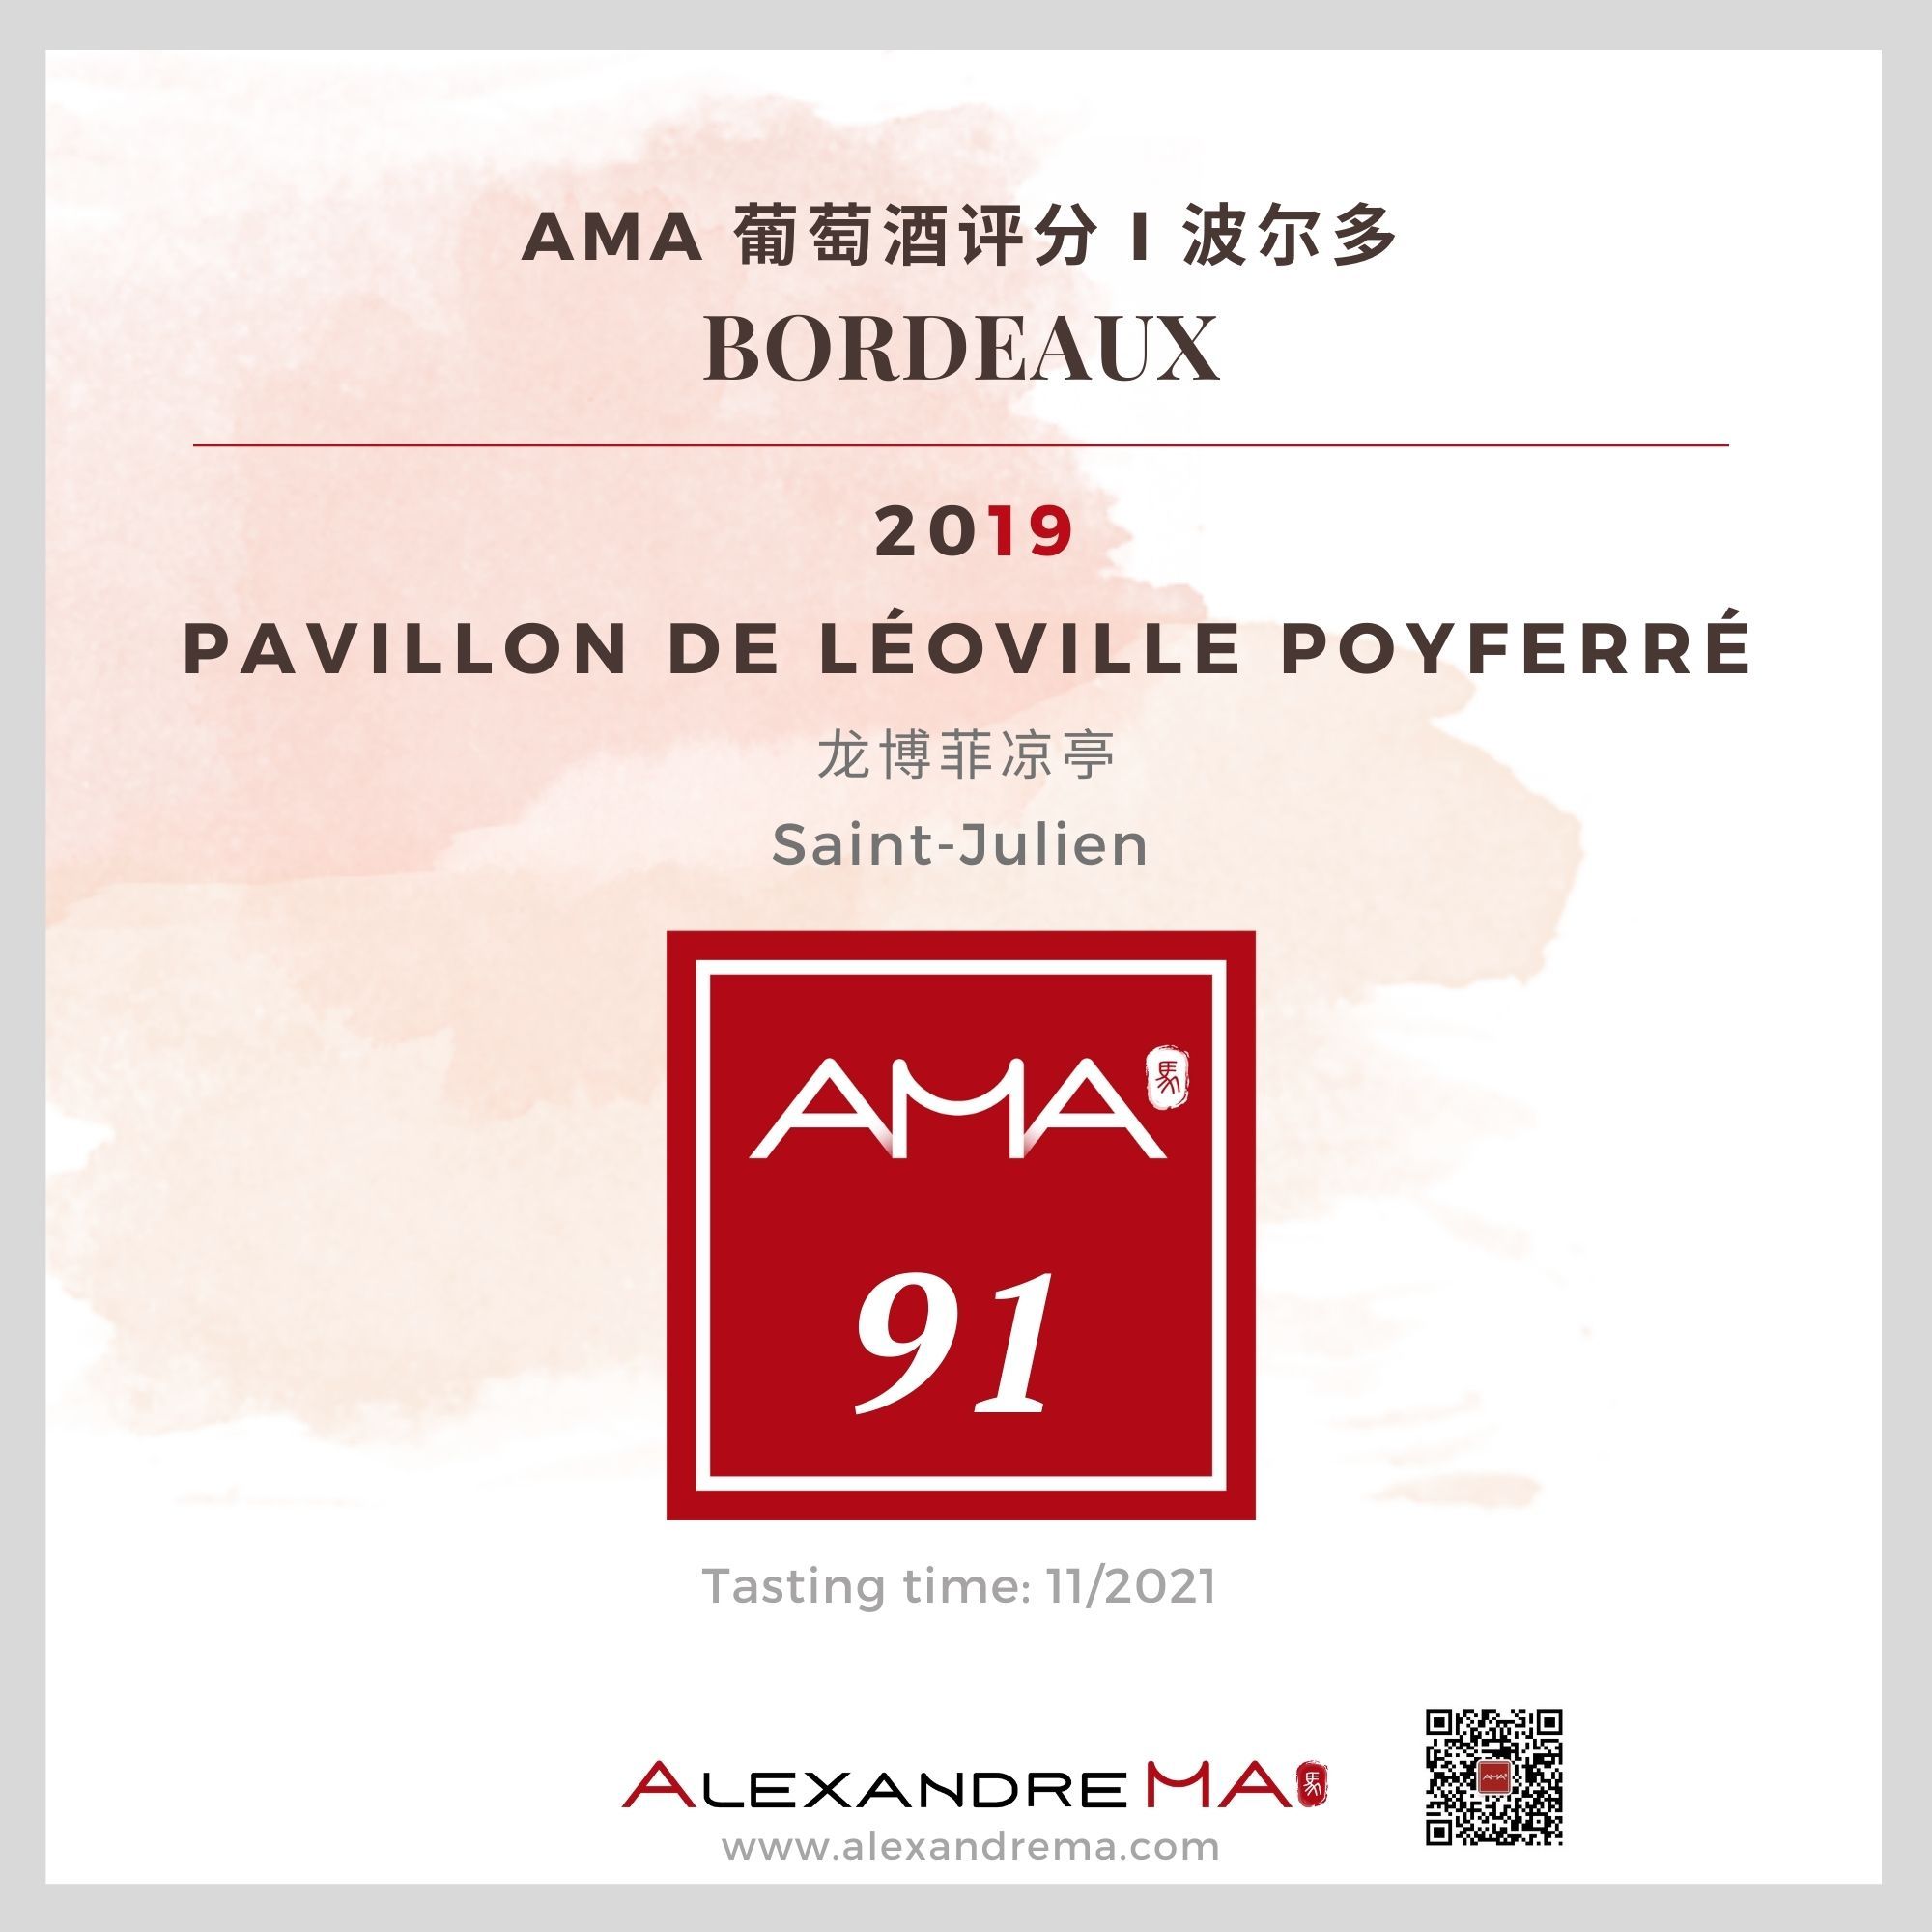 Pavillon de Léoville Poyferré 2019 龙博菲凉亭 - Alexandre Ma